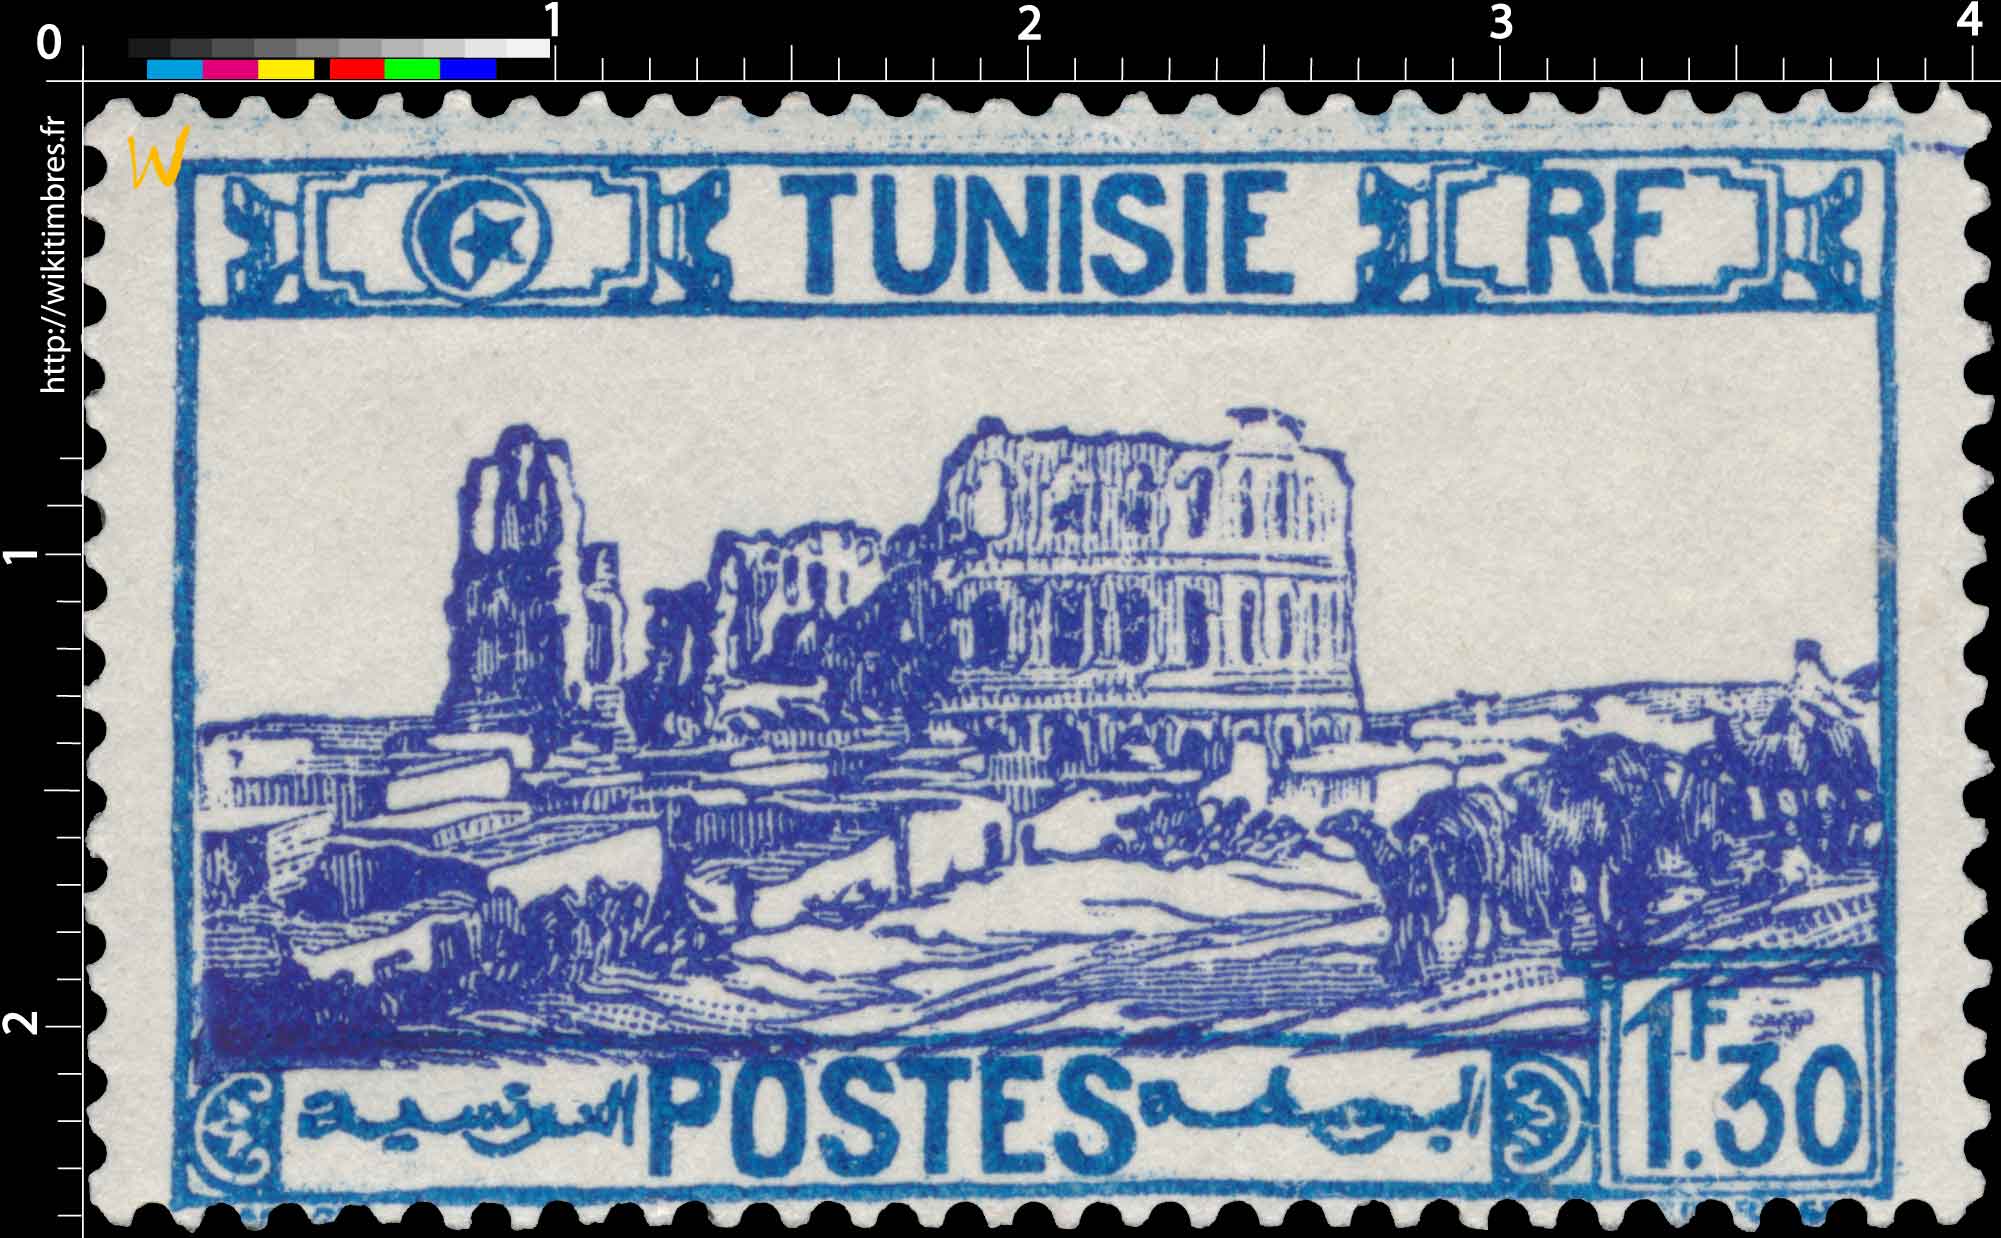 Tunisie - Amphithéâtre d'El Djem